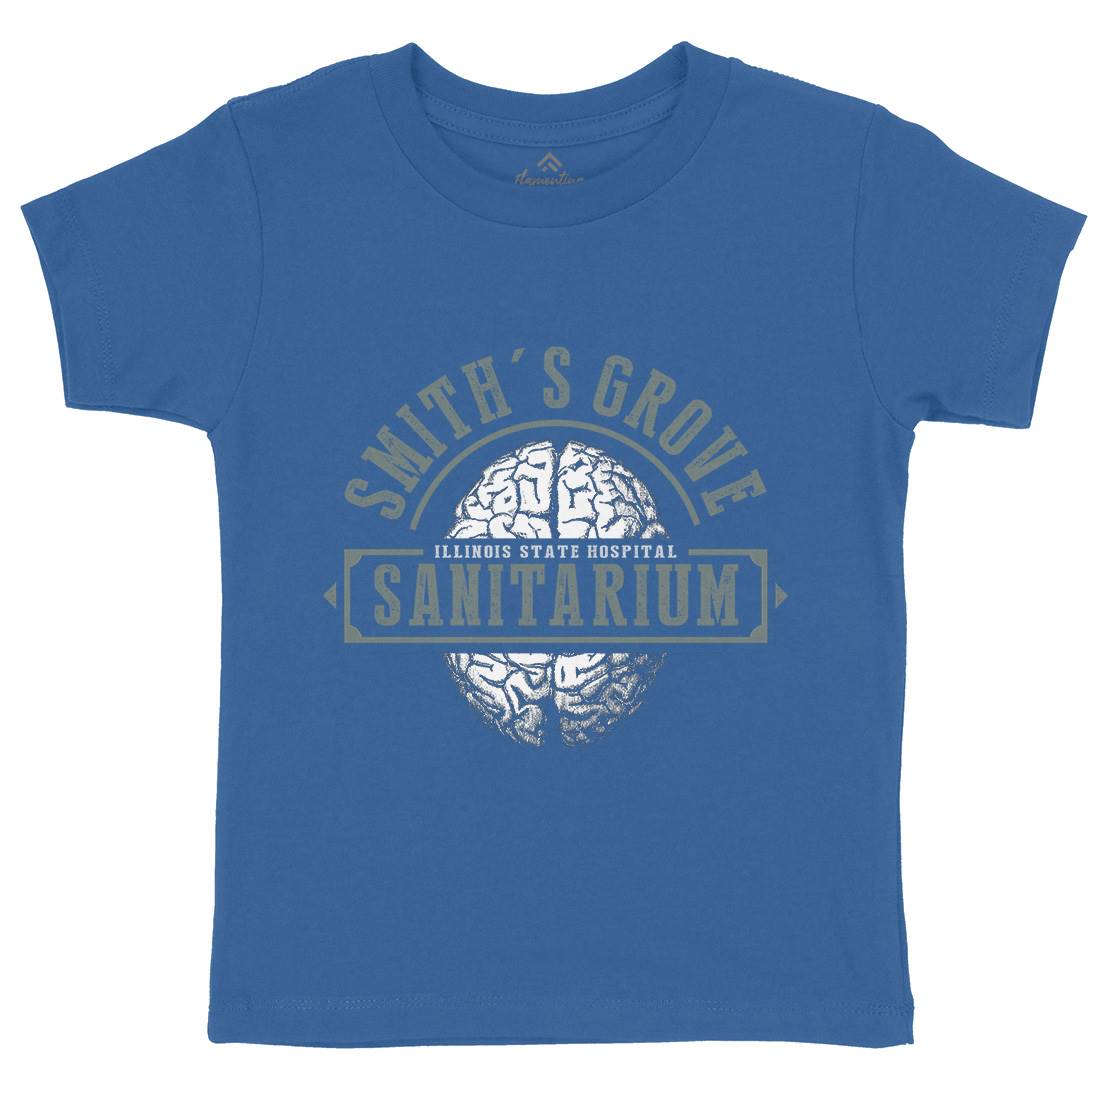 Smiths Grove Kids Organic Crew Neck T-Shirt Horror D331